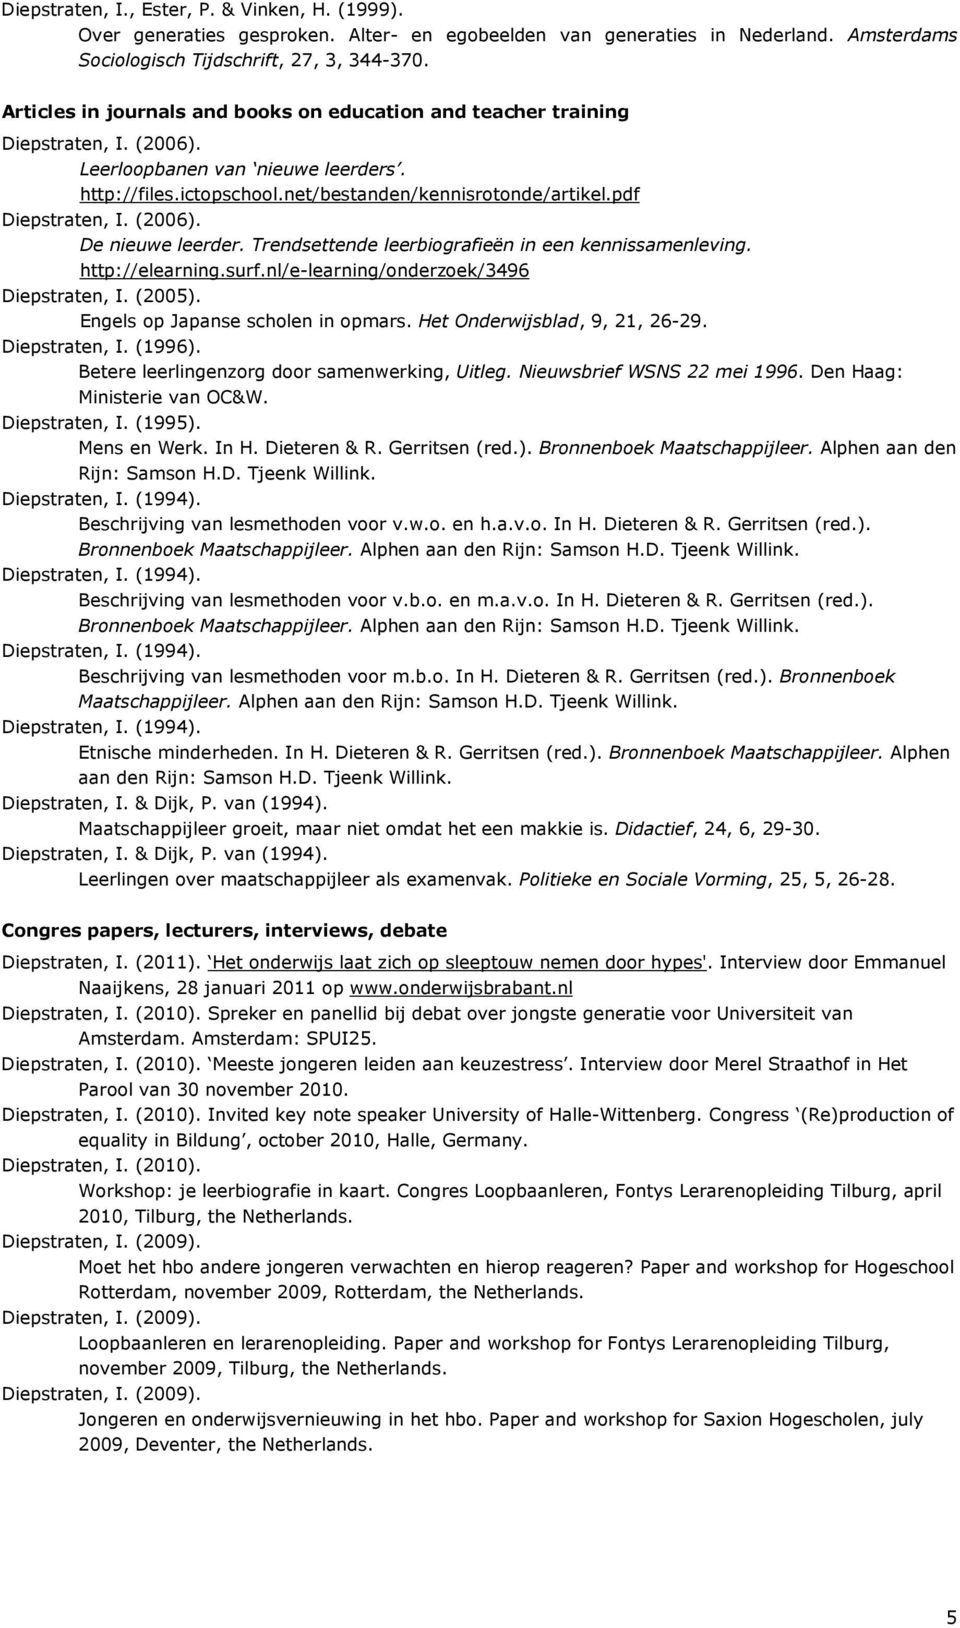 Trendsettende leerbiografieën in een kennissamenleving. http://elearning.surf.nl/e-learning/onderzoek/3496 Diepstraten, I. (2005). Engels op Japanse scholen in opmars. Het Onderwijsblad, 9, 21, 26-29.